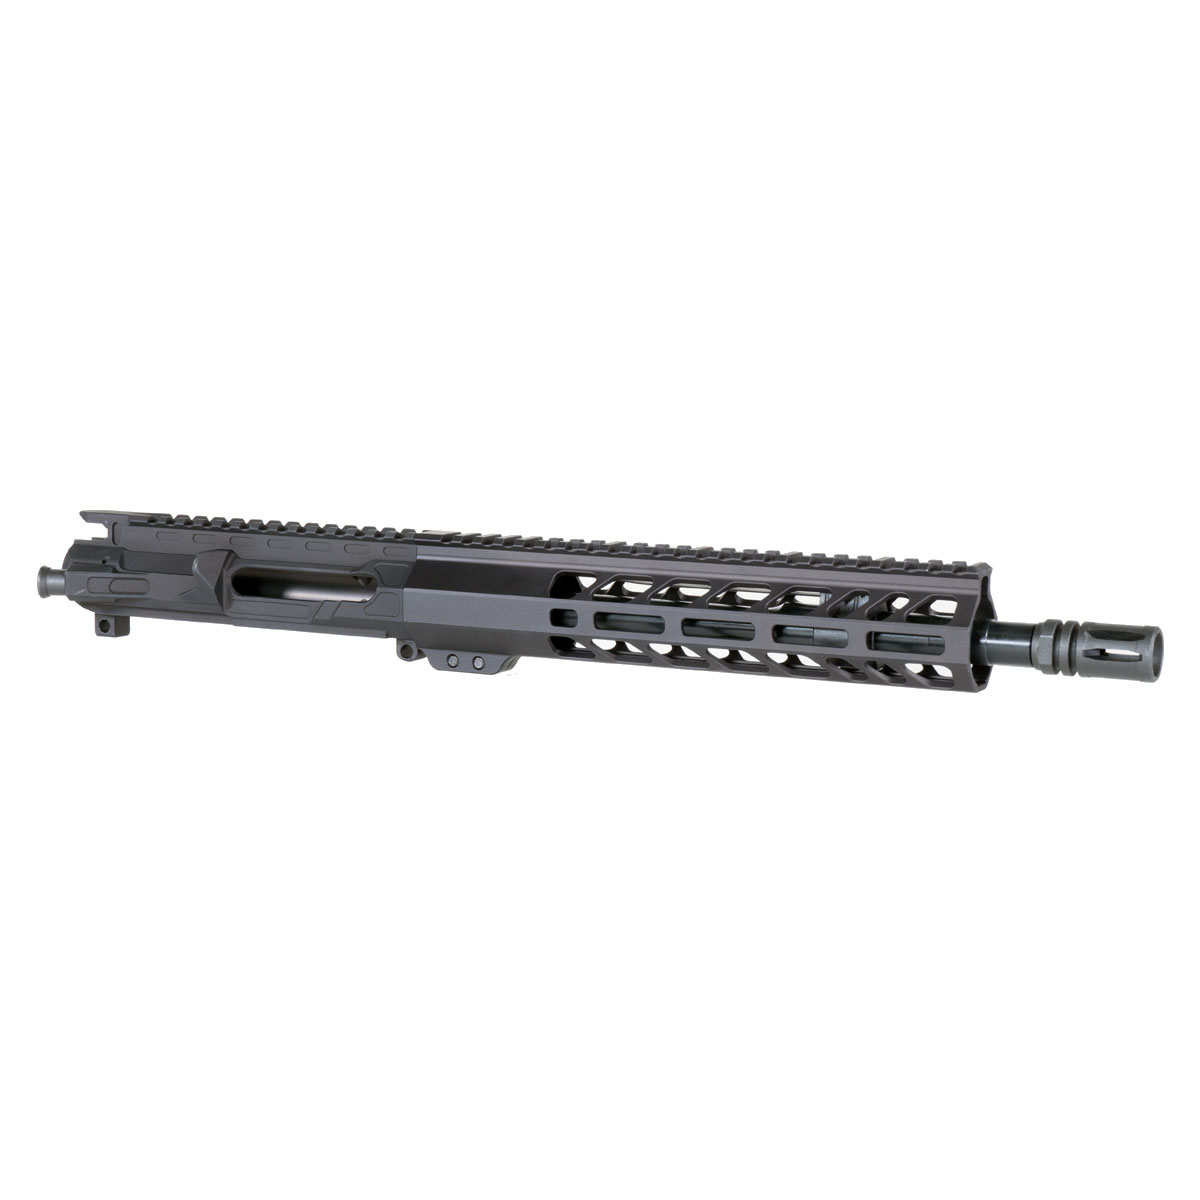 MMC 'The Gangster' 11.5-inch AR-15 5.56 NATO QPQ Nitride Pistol Upper Build Kit